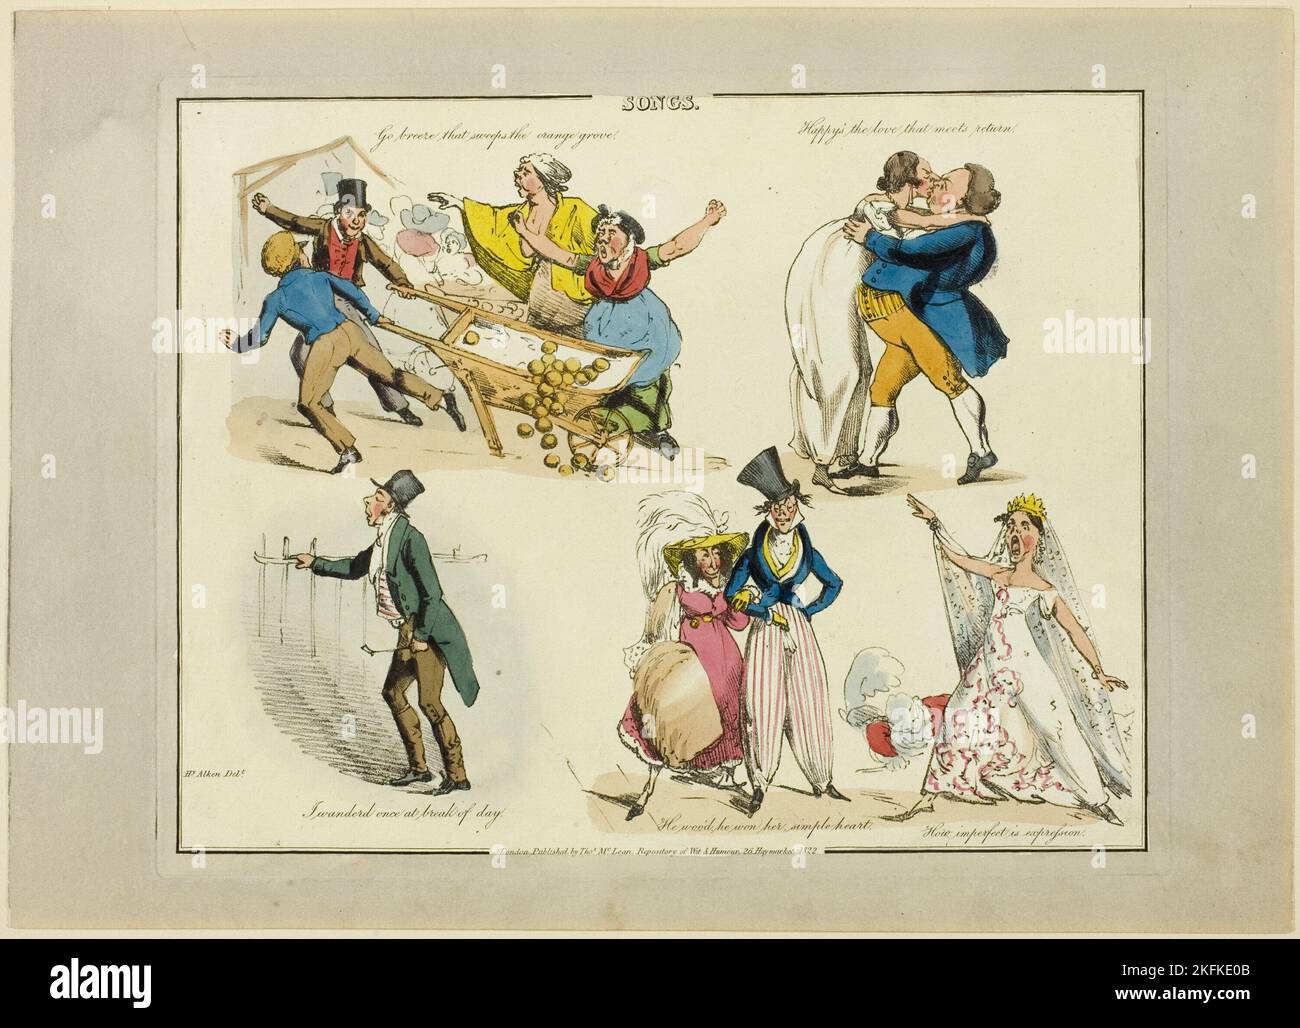 Piatto da illustrazioni a canzoni popolari, 1822. Foto Stock